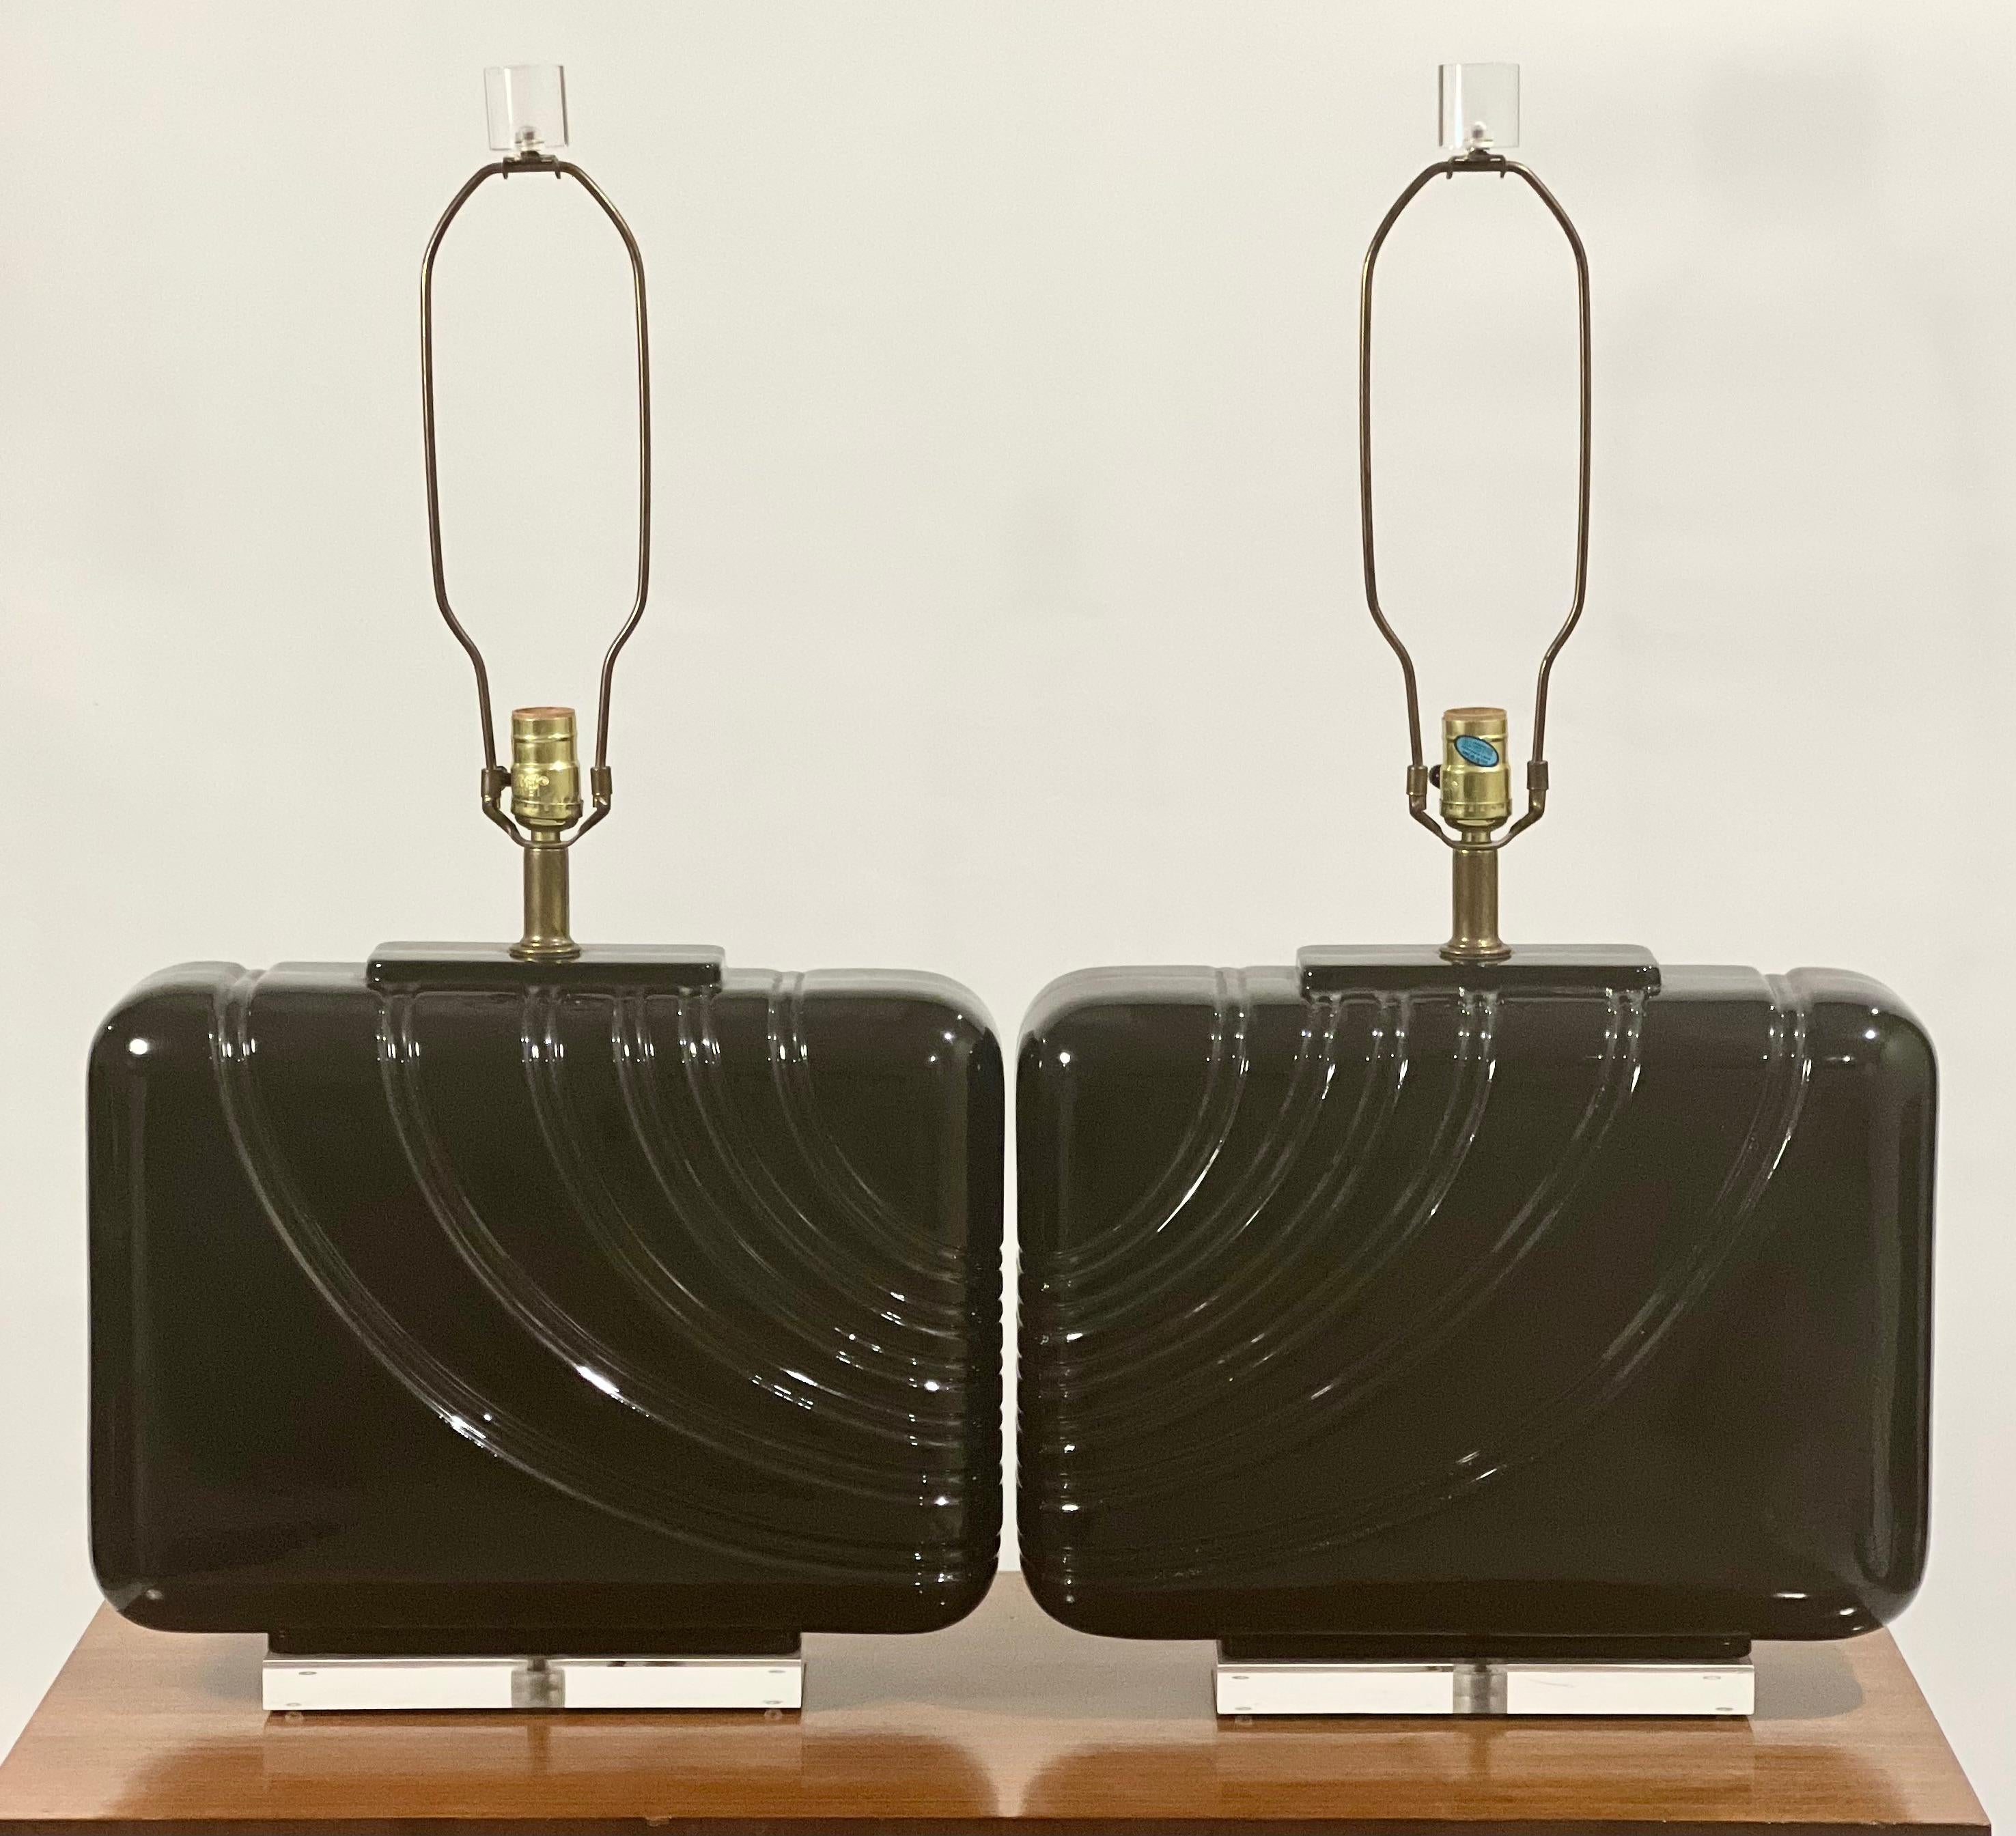 Ein wunderschönes Paar übergroßer schwarz glasierter Keramiklampen aus den 1980er Jahren.

Jede Leuchte zeichnet sich durch ein kontinuierliches, kanalisiertes Wellenmuster auf einem abgerundeten, rechteckigen Körper mit einem Sockel aus Lucit und